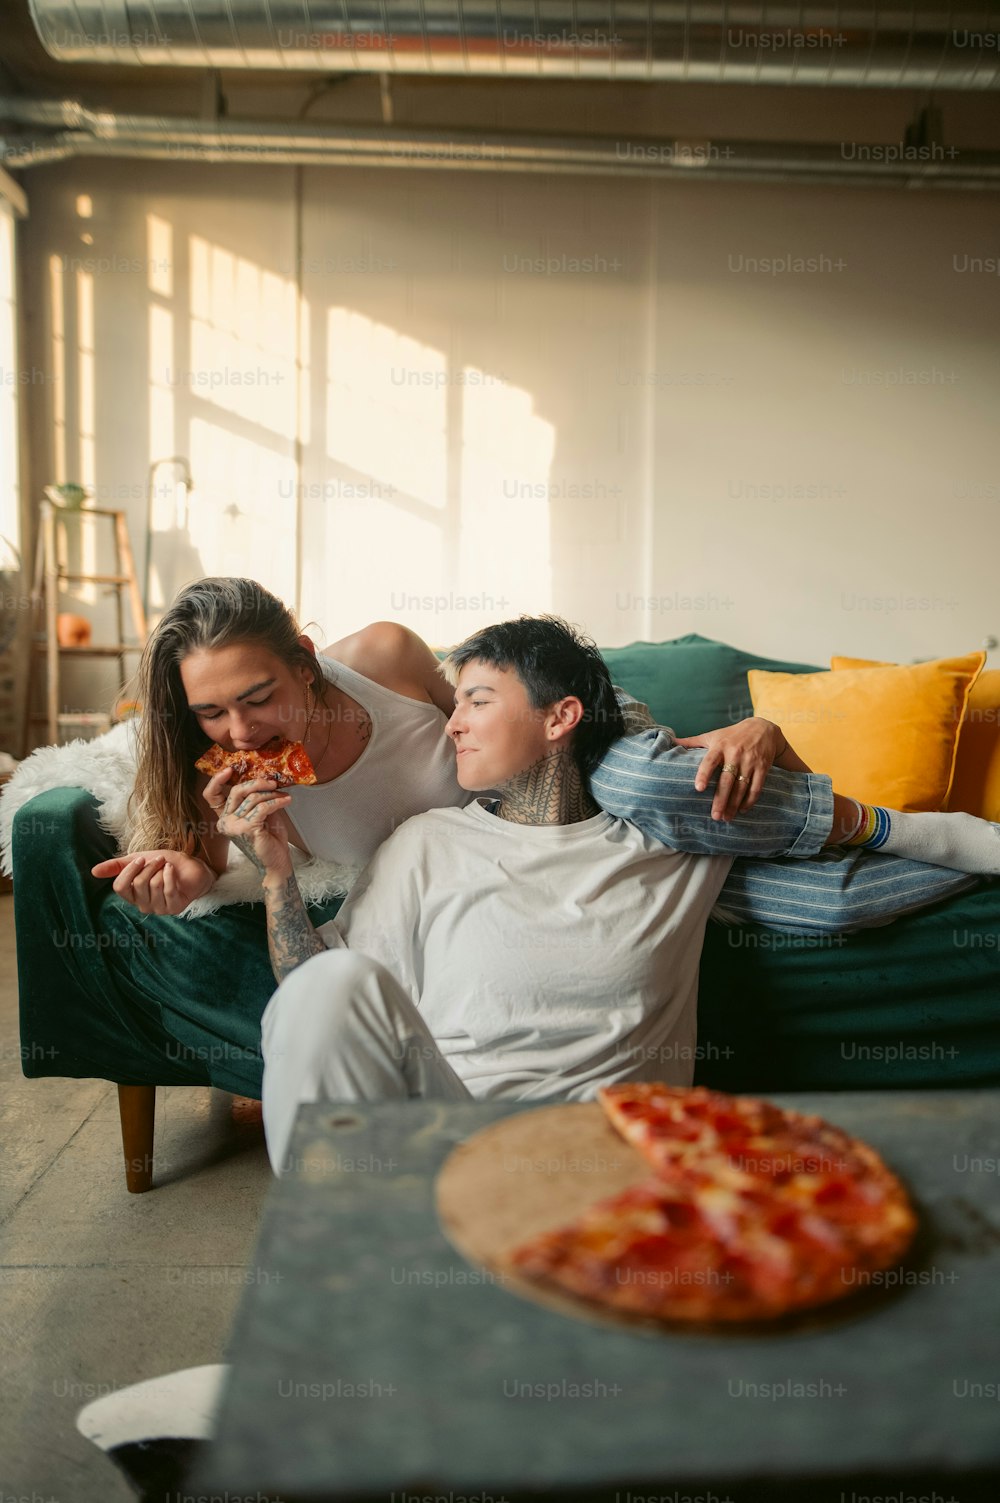 Ein Mann und eine Frau sitzen auf einer Couch und essen Pizza